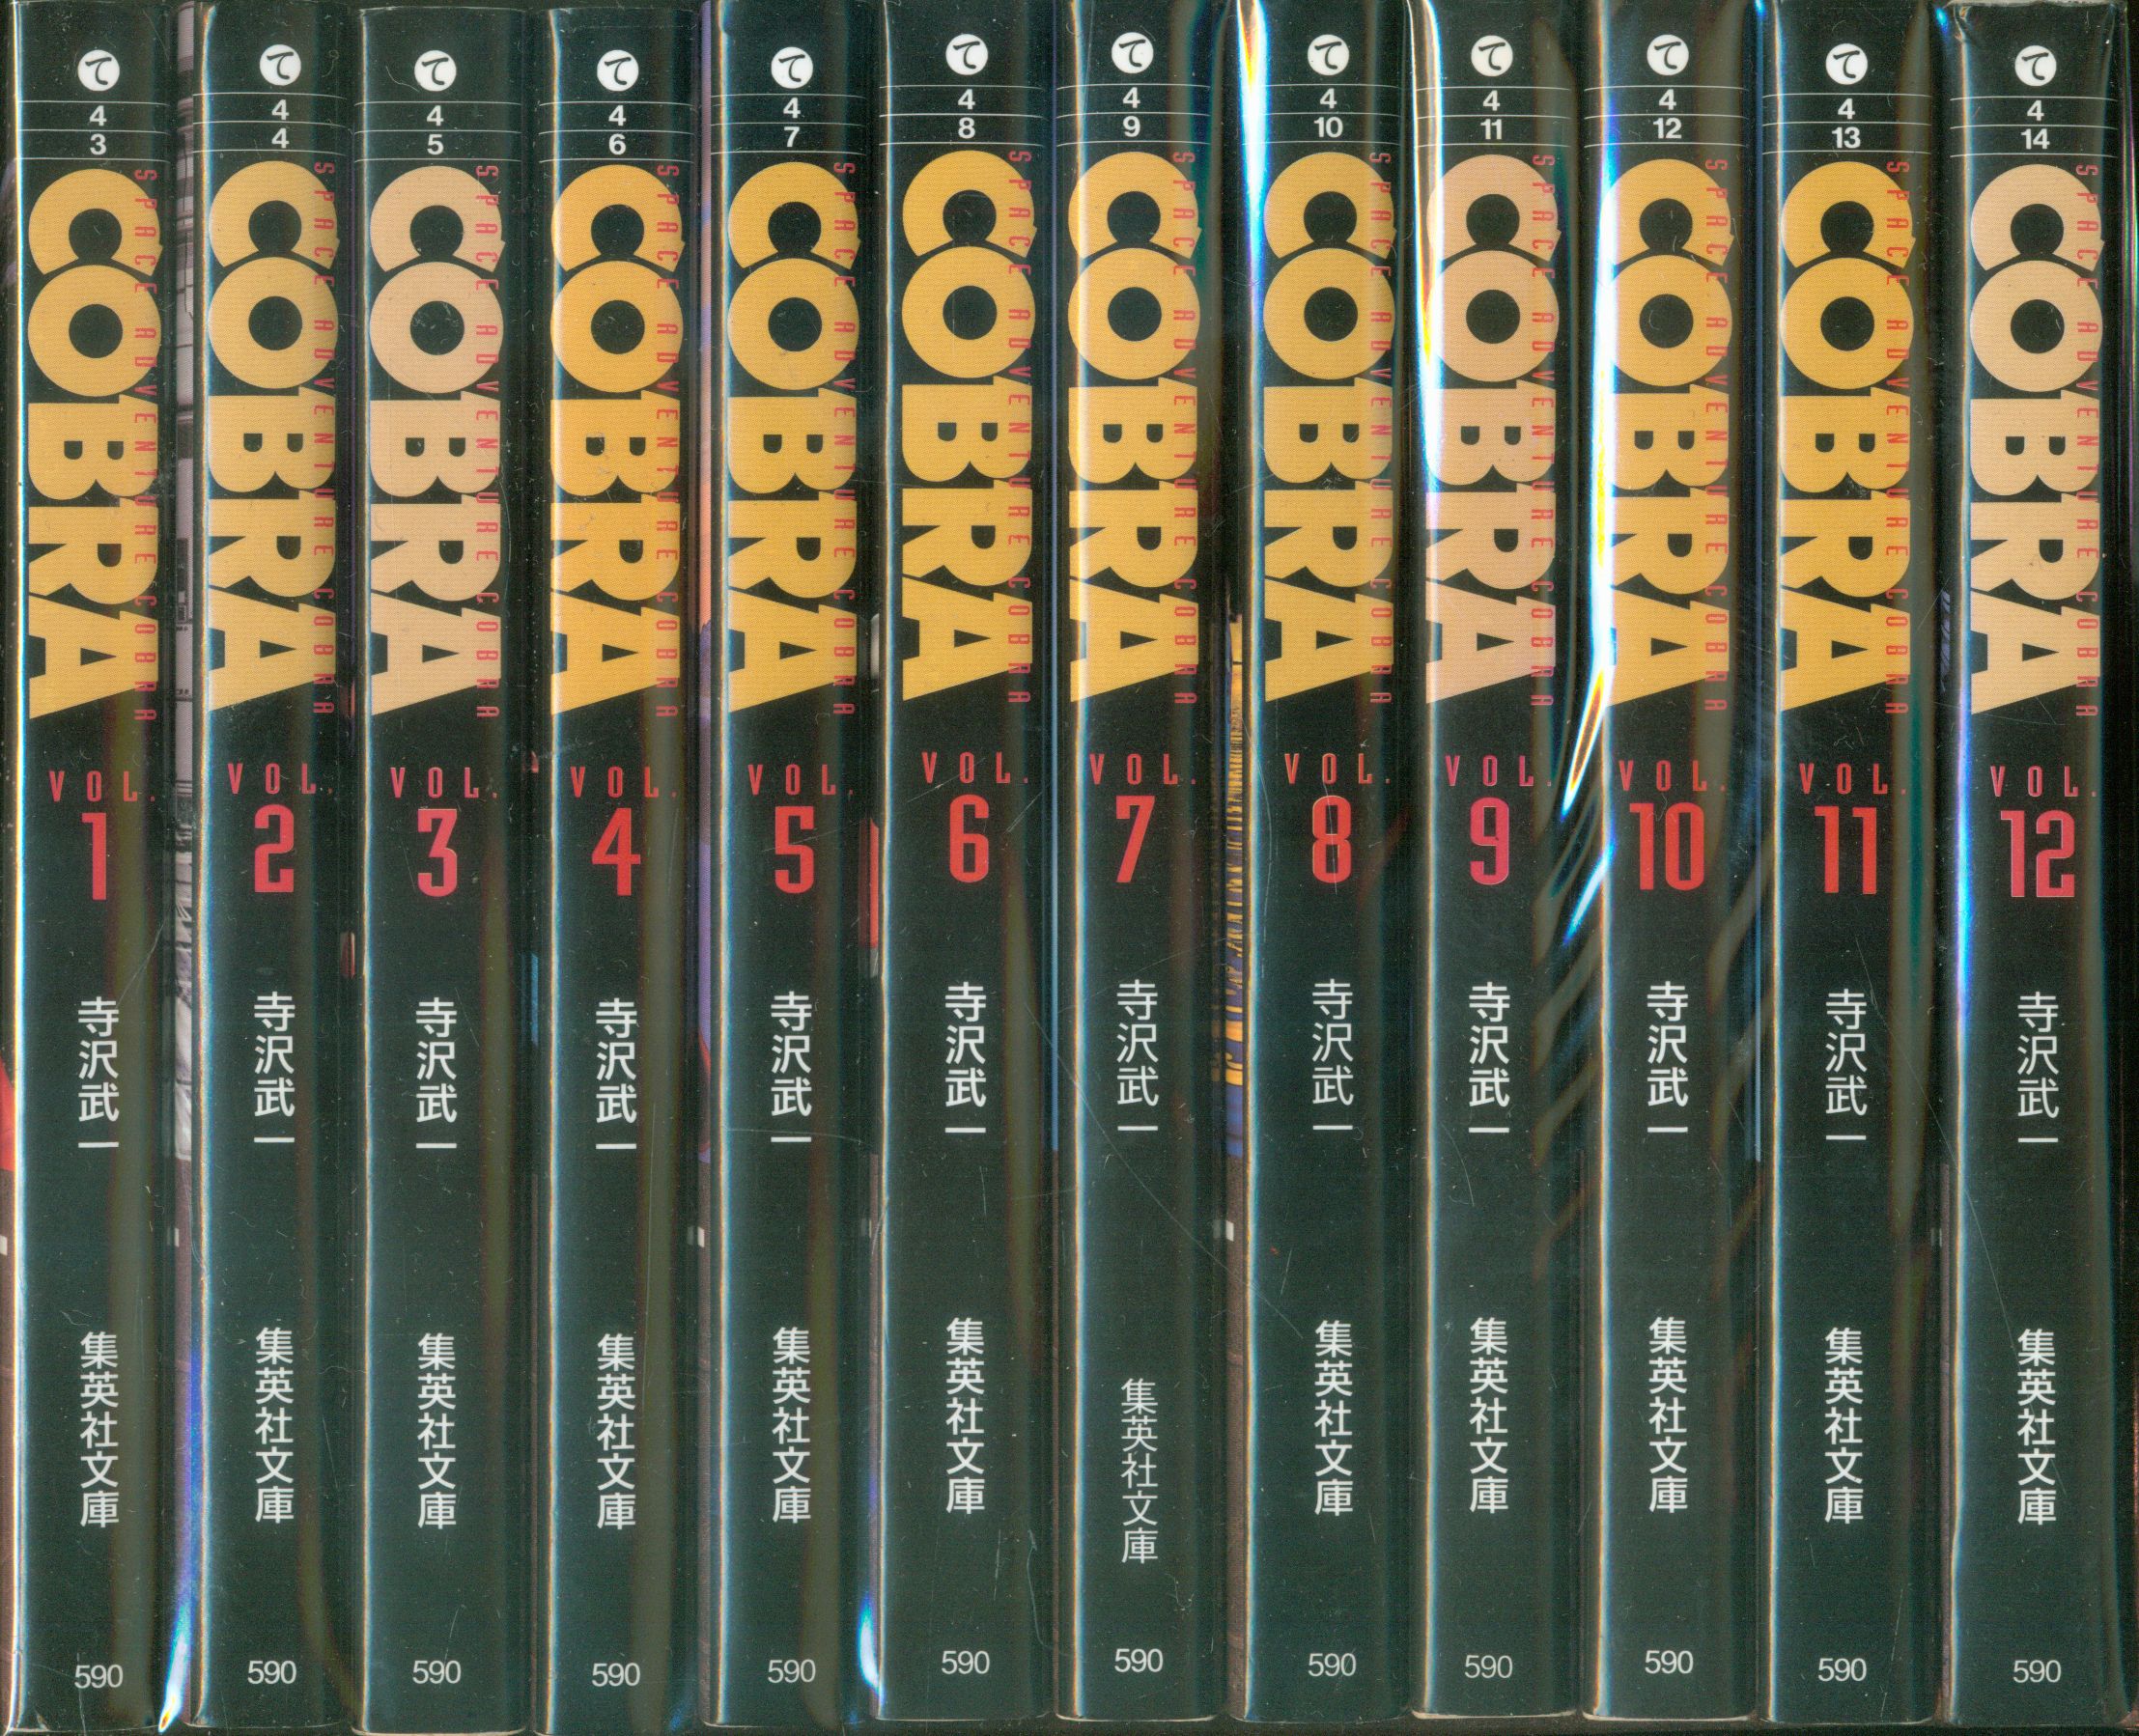 集英社 集英社文庫コミック版 寺沢武一 Cobra 文庫版 全12巻 セット まんだらけ Mandarake